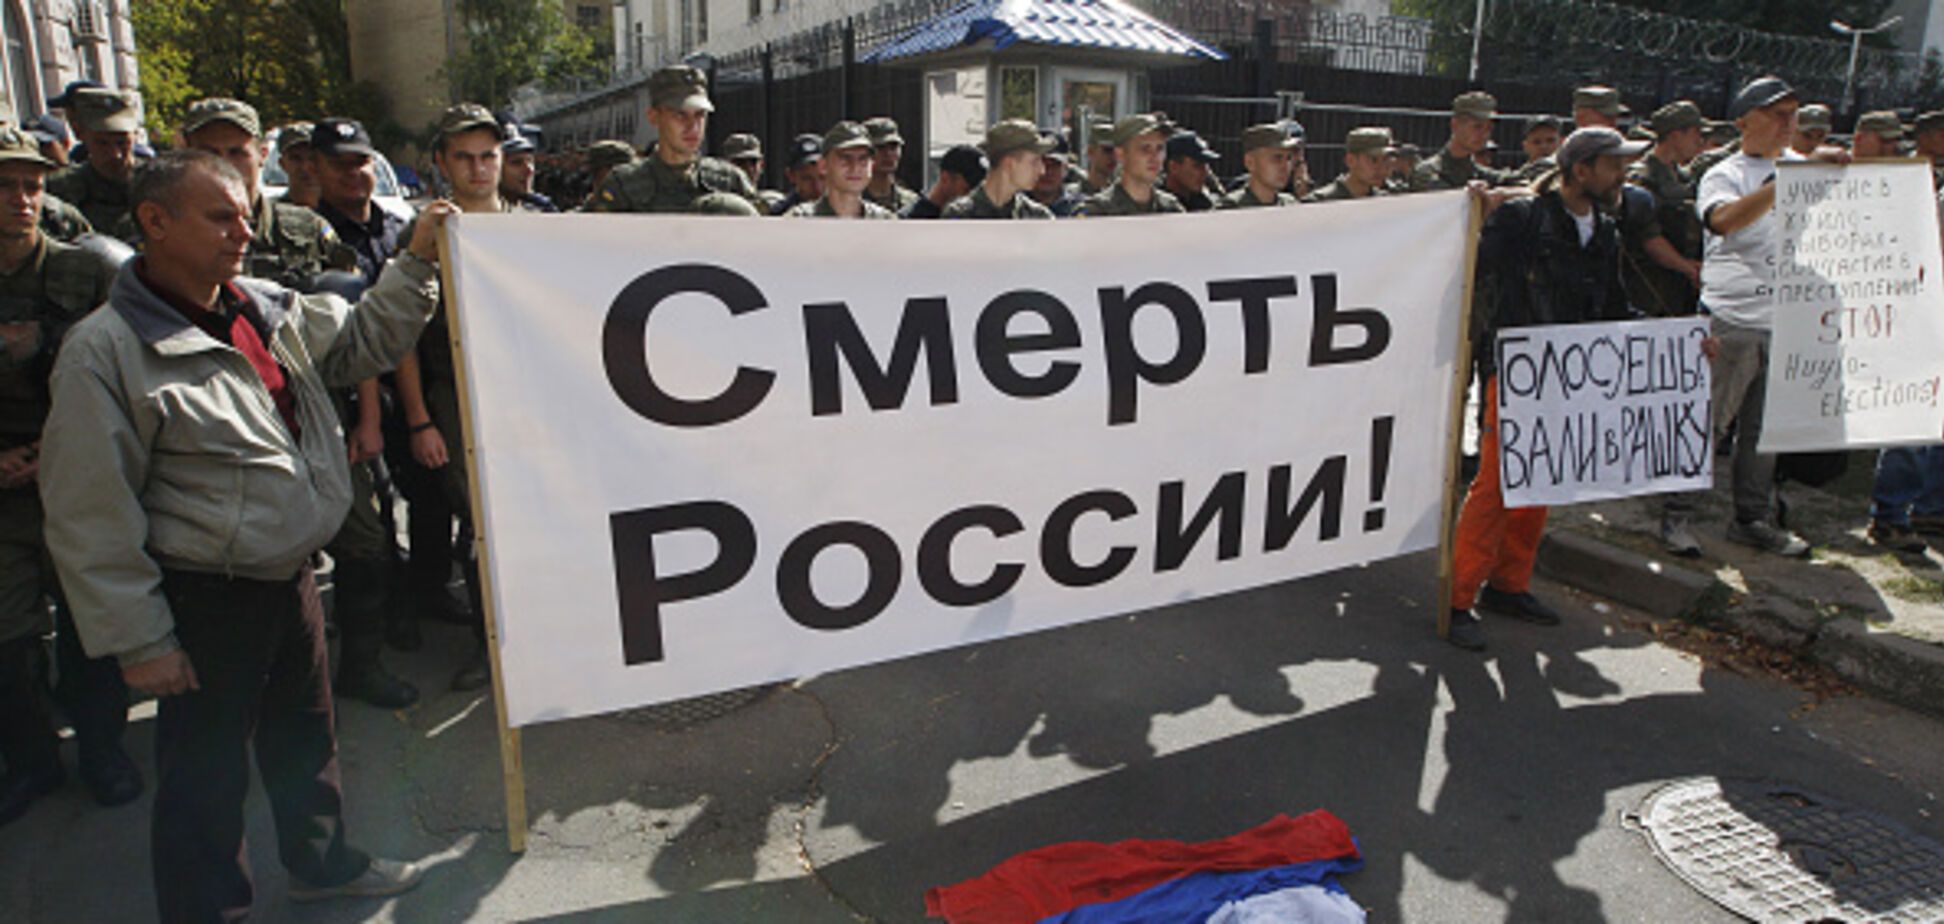 'Некрофилы!' Издевательская акция в Петербурге взбесила россиян. Опубликованы фото